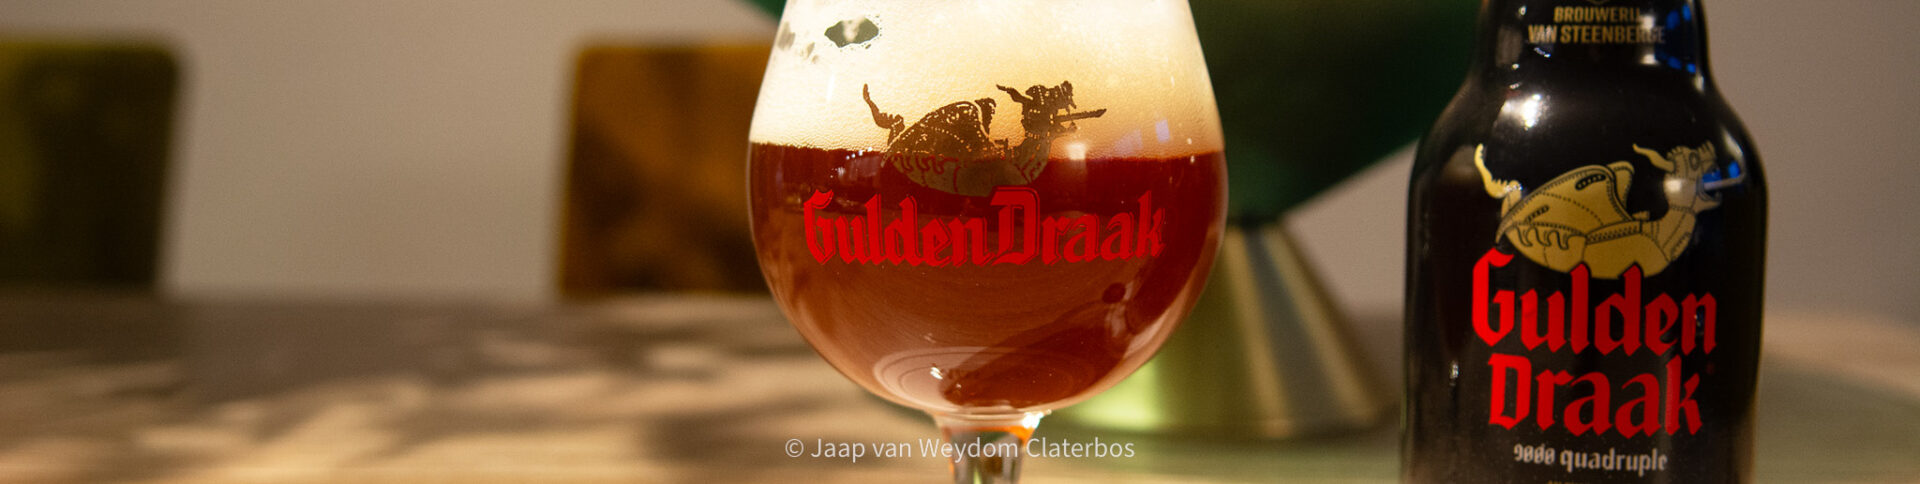 Gulden Draak 9000 Quadrupel | Brouwerij Van Steenberge